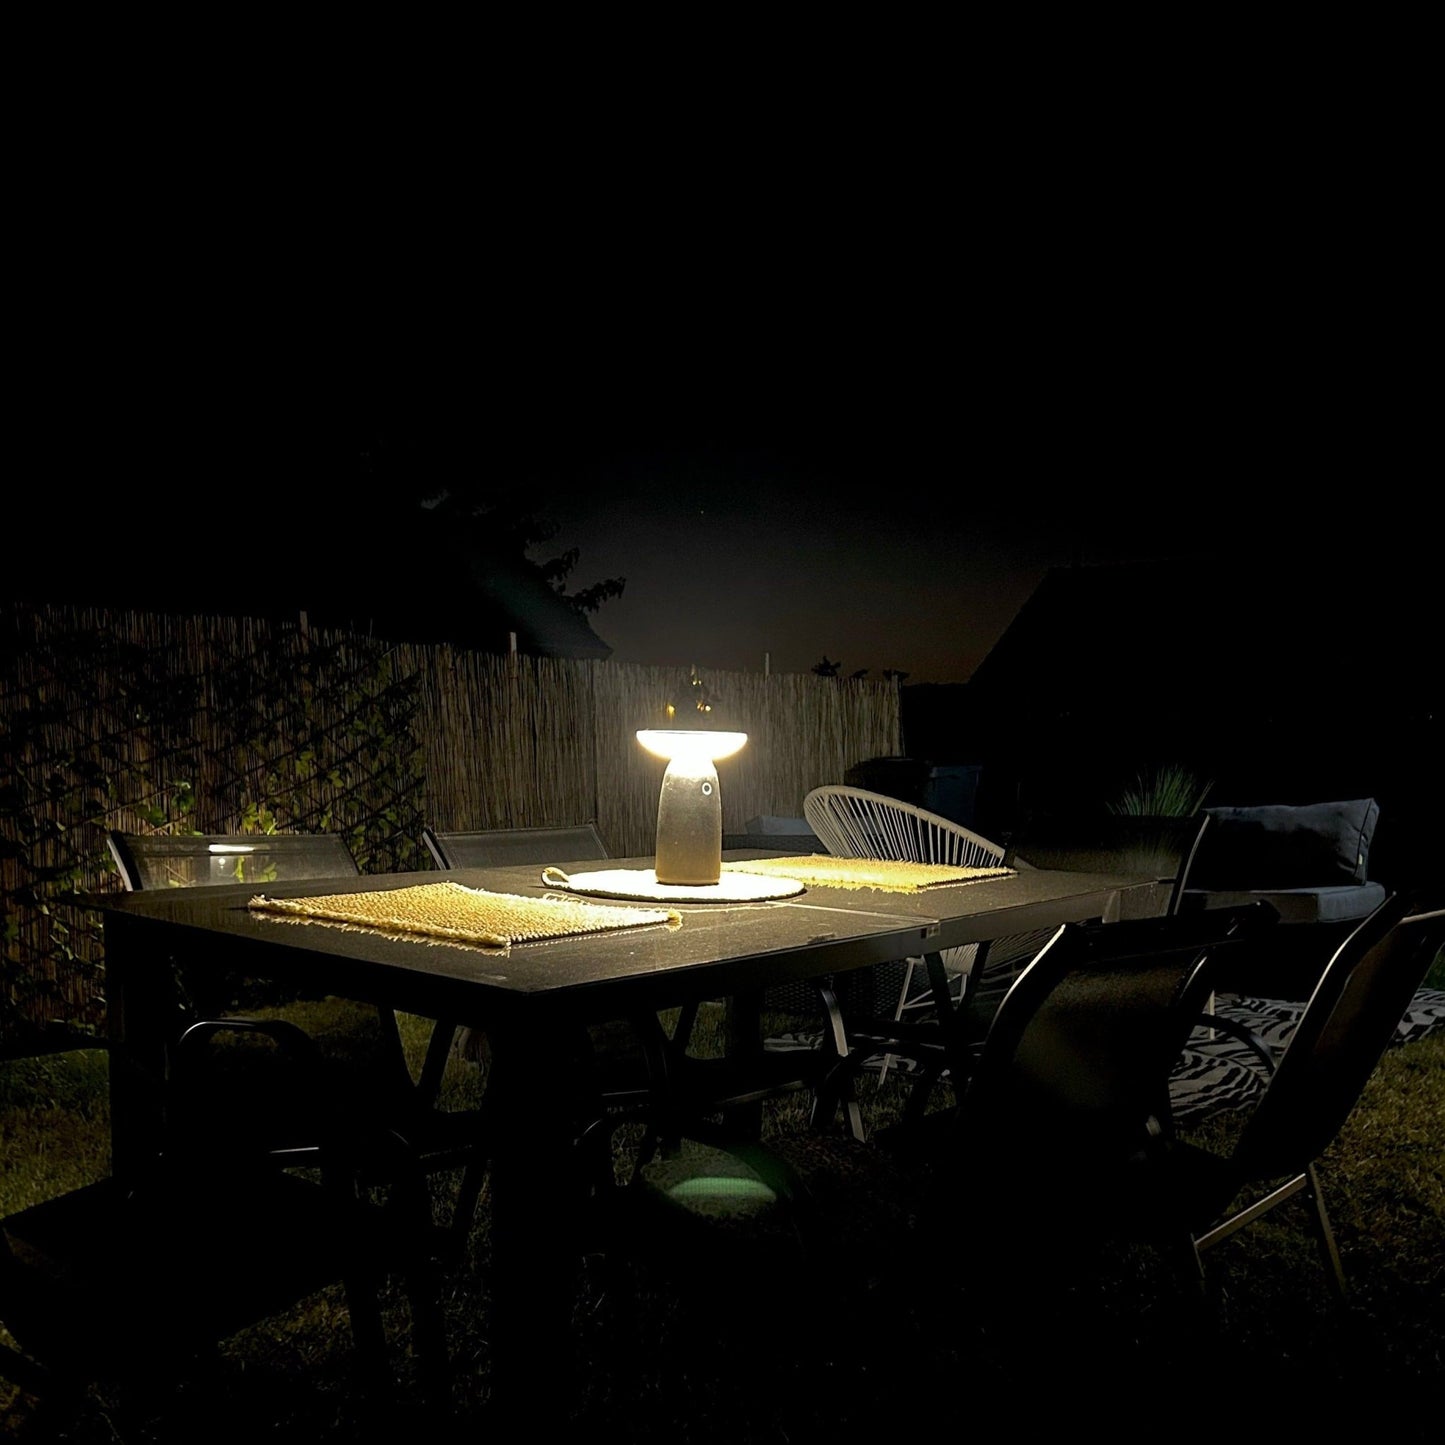 Lampe de table Led solaire noire HALO - 3 modes d'éclairage - max 250 lumens - Prise USB - Lumihome-France.com